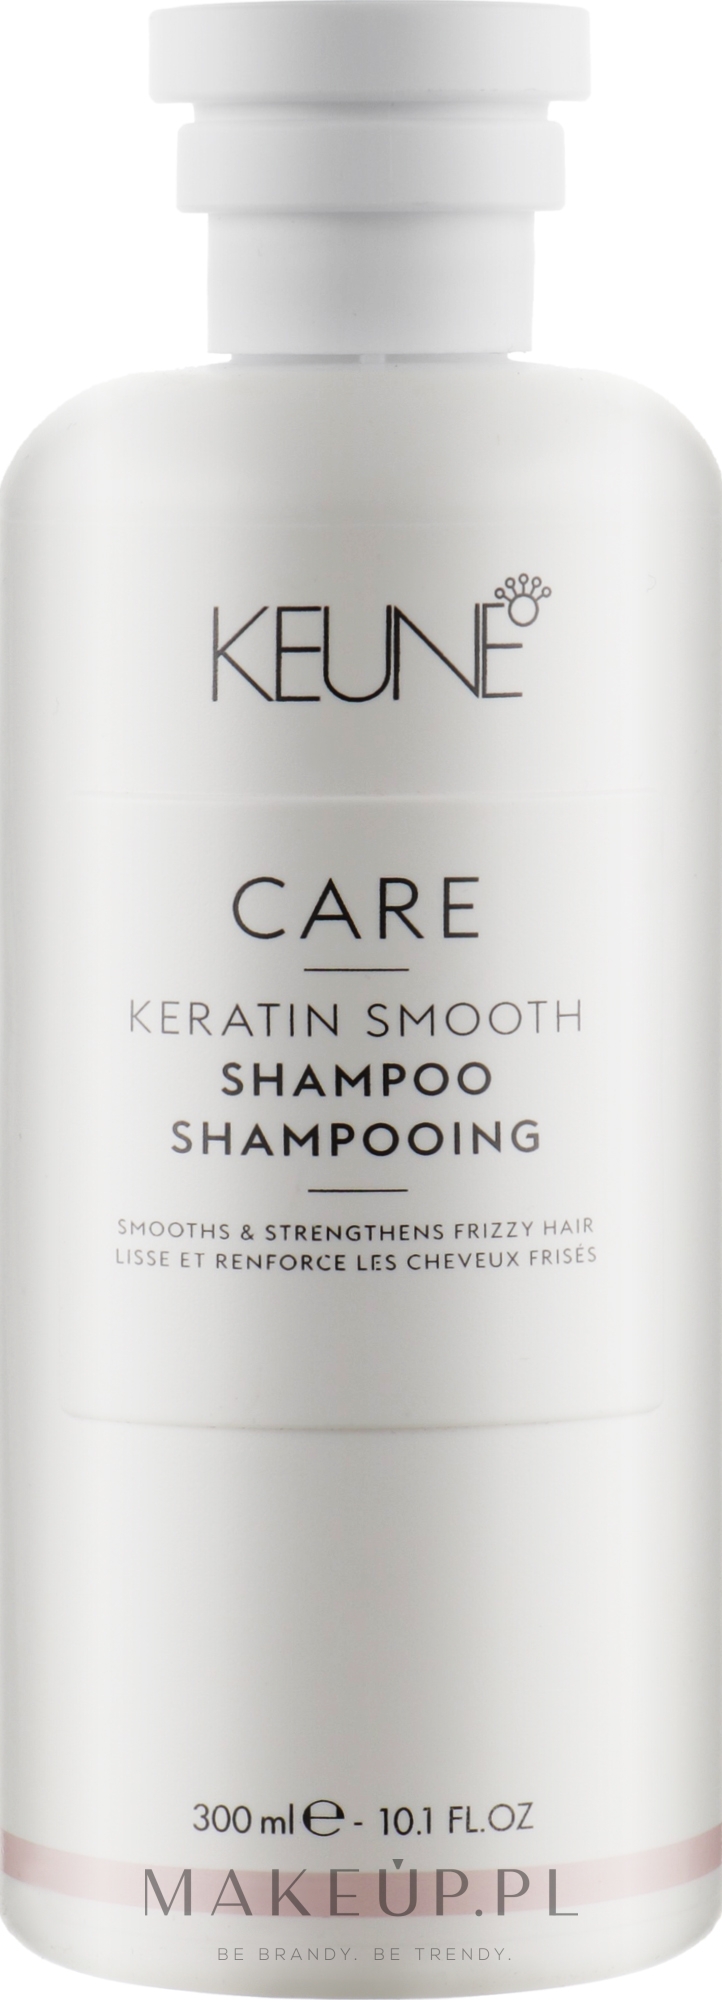 keune care keratin smooth szampon 300ml opinie